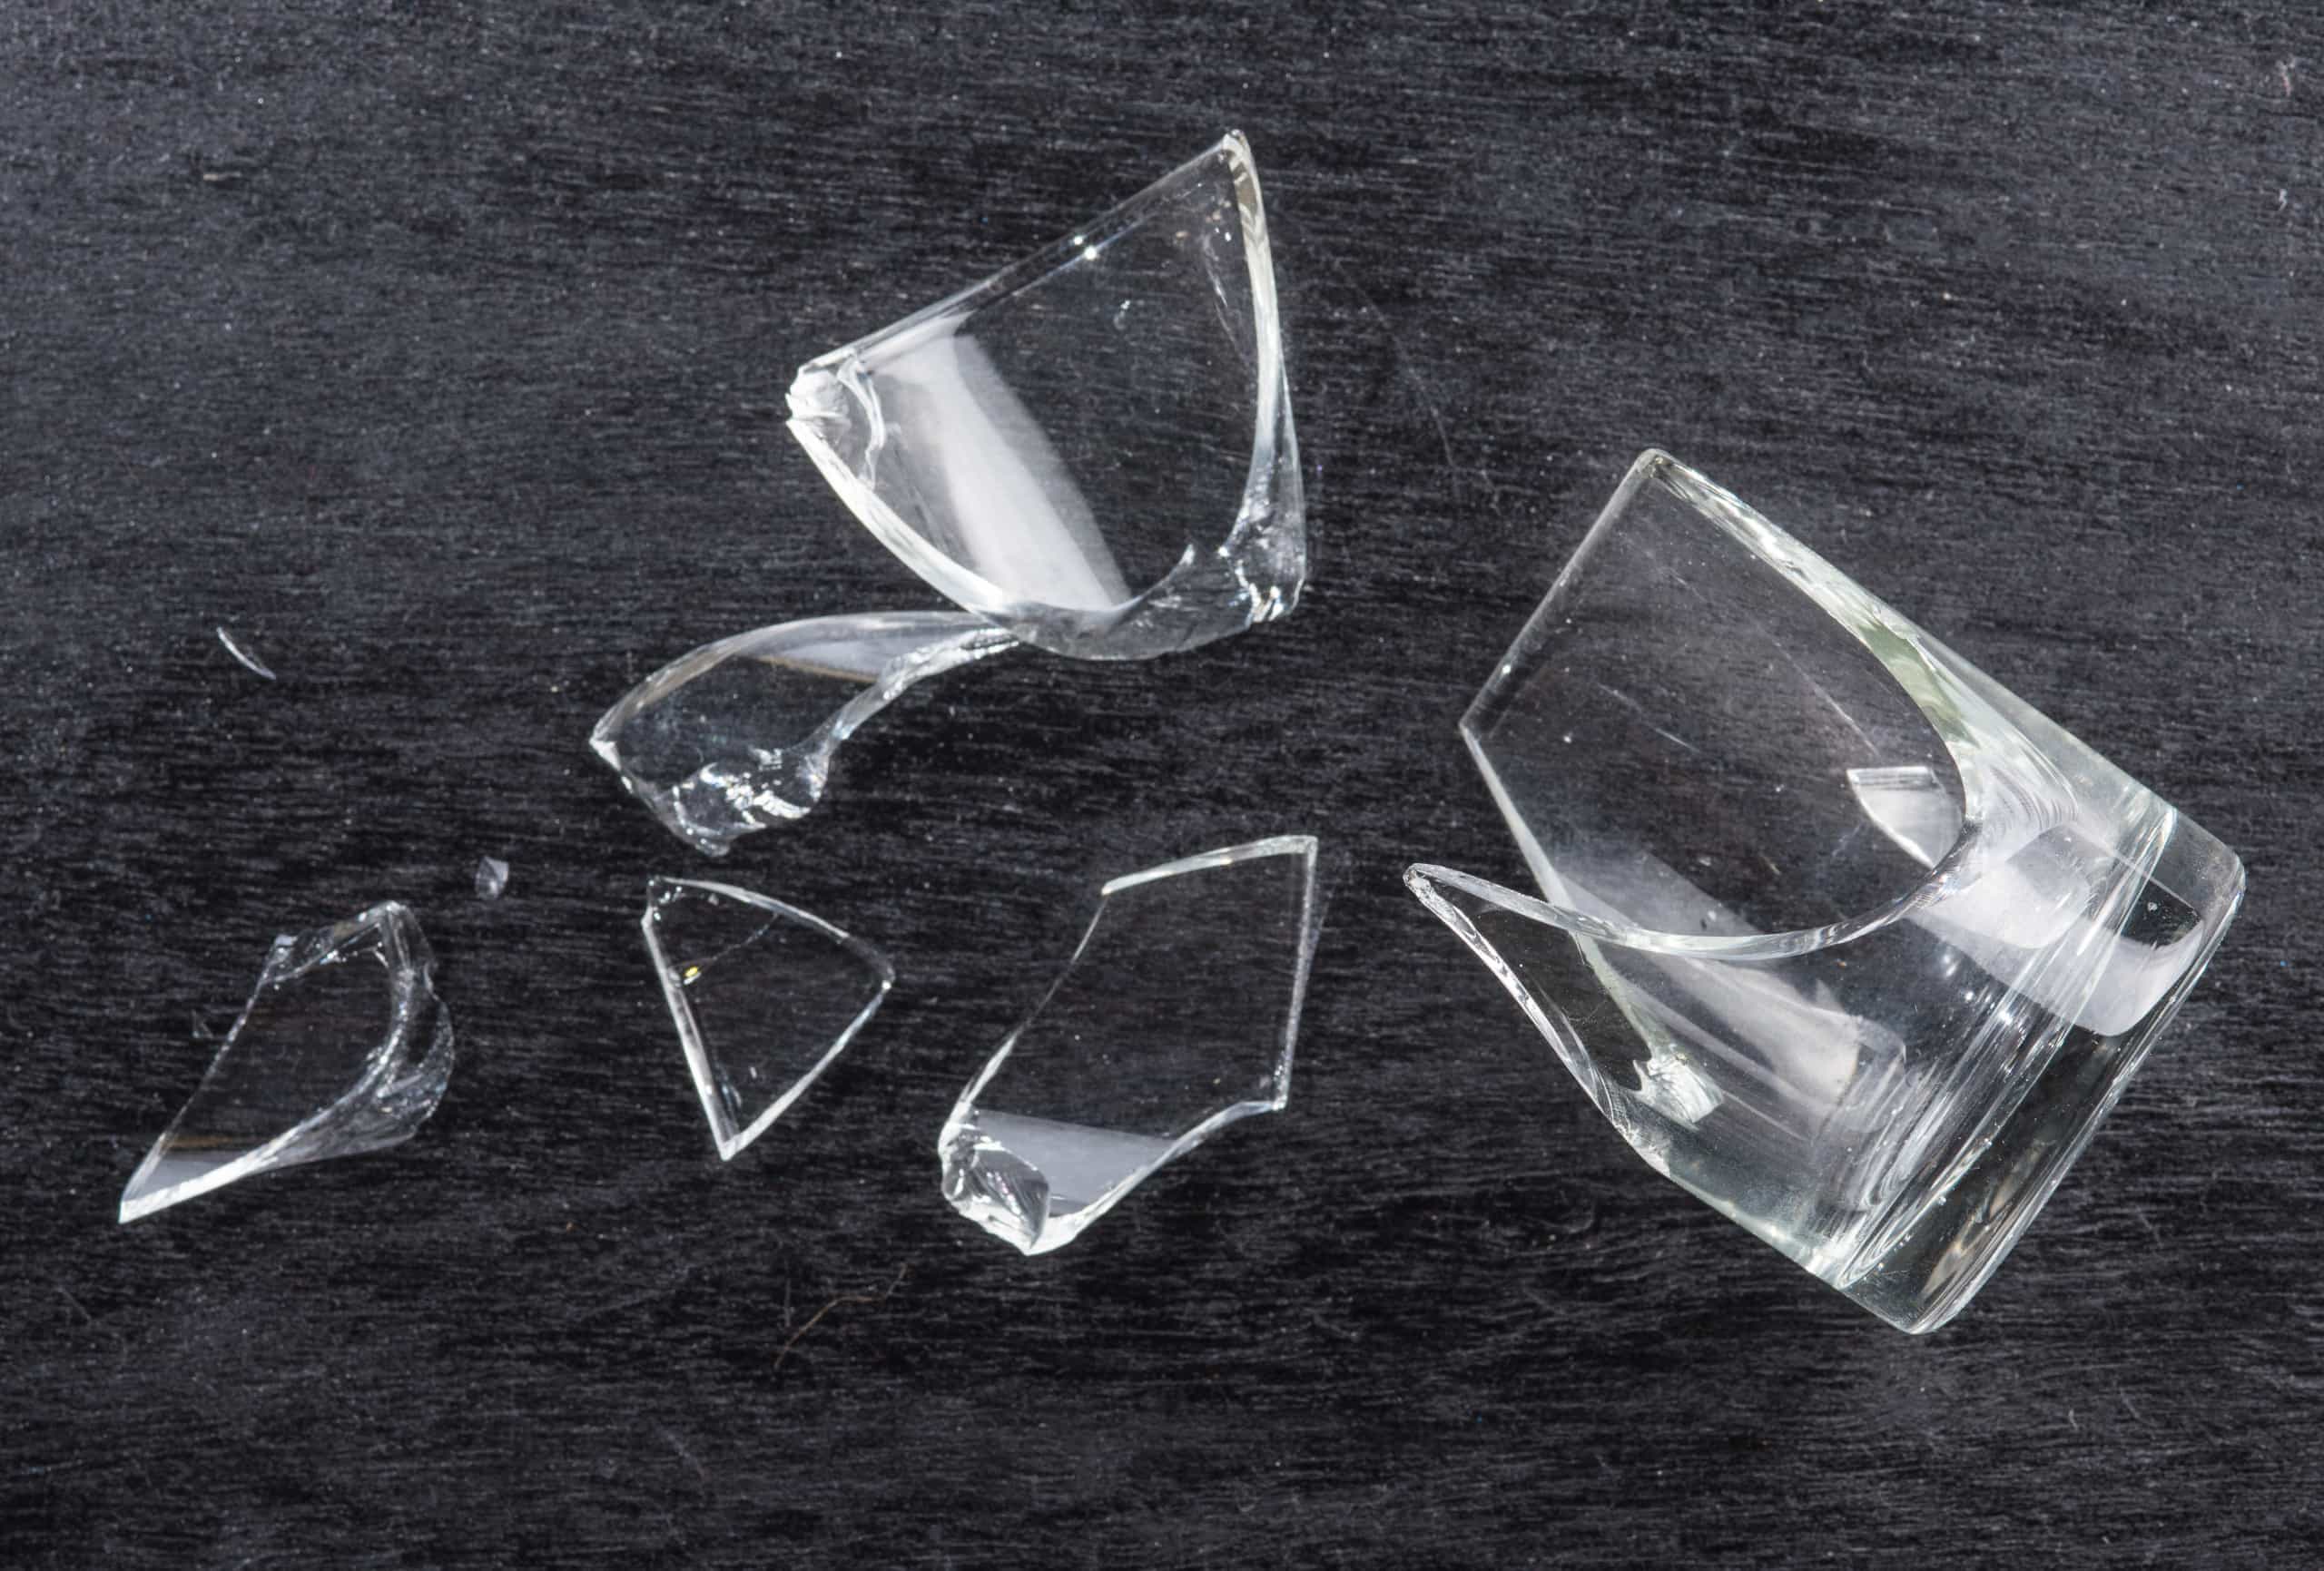 Почему посуда разбита. Разбитый стакан. Стакан битое стекло. Разбитый стакан для детей. Разбитый граненый стакан.